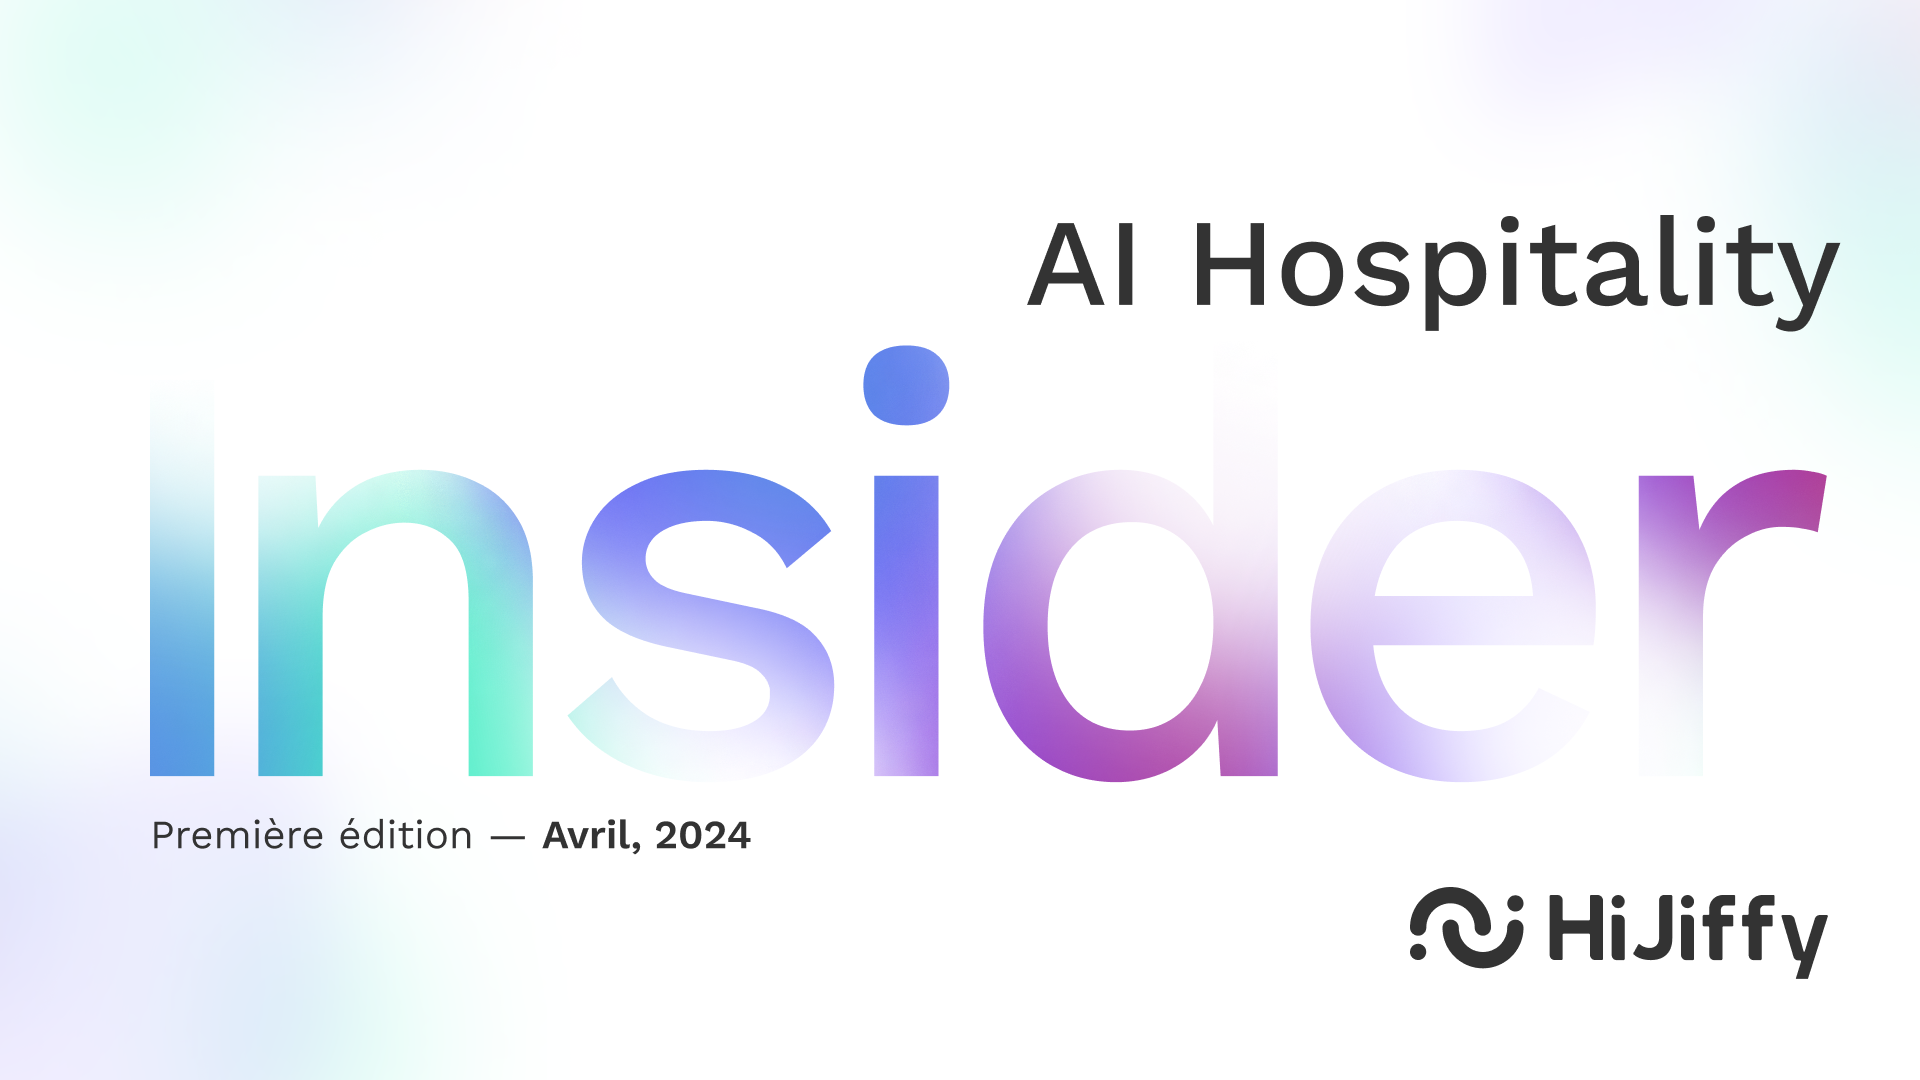 AI Hospitality Insider - La première édition de notre magazine sur l'hôtellerie est sortie !